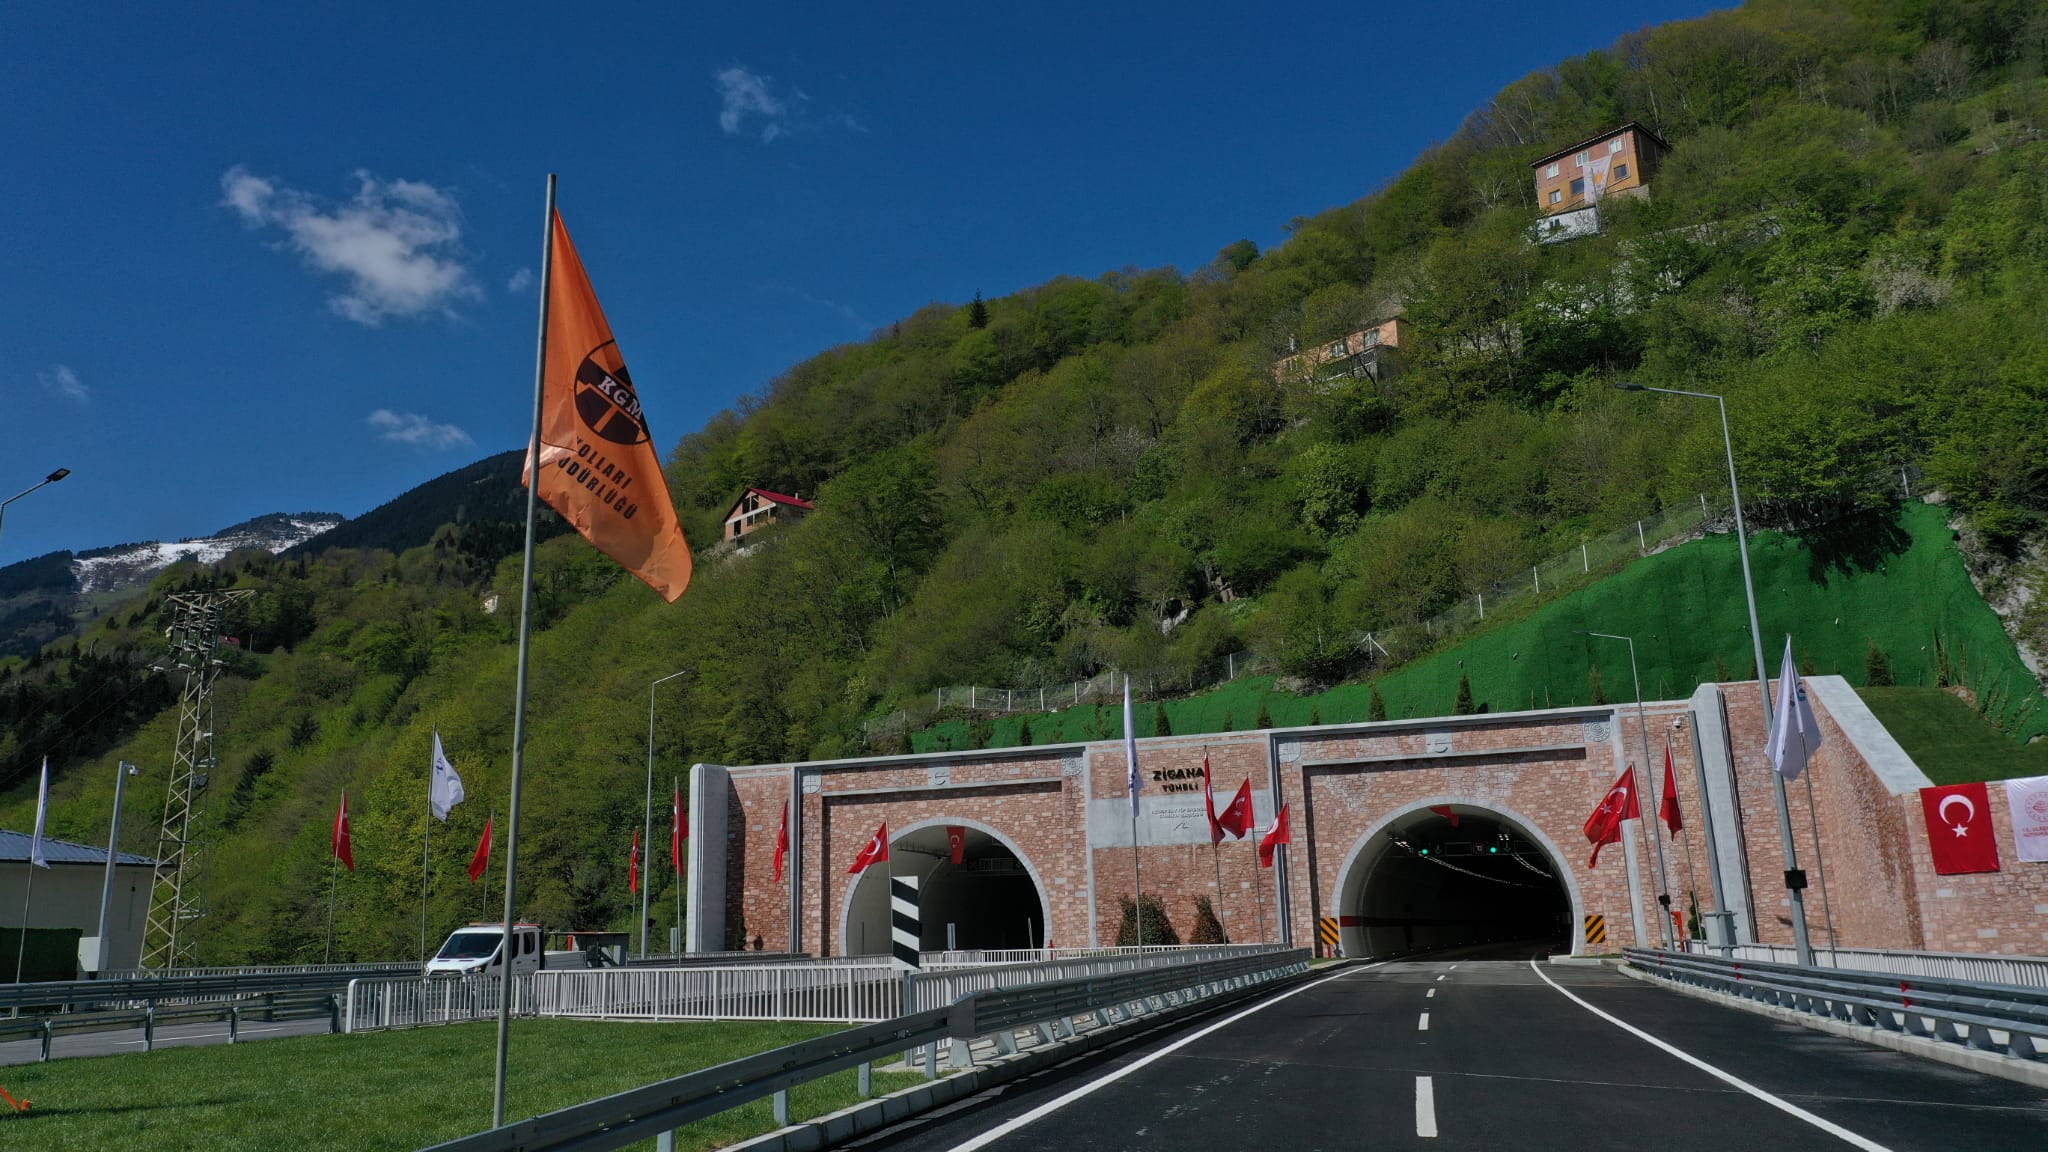 Bakan Karaismailoğlu:" Bir günde 50 kilometre uzunluğunda tünel açtık"